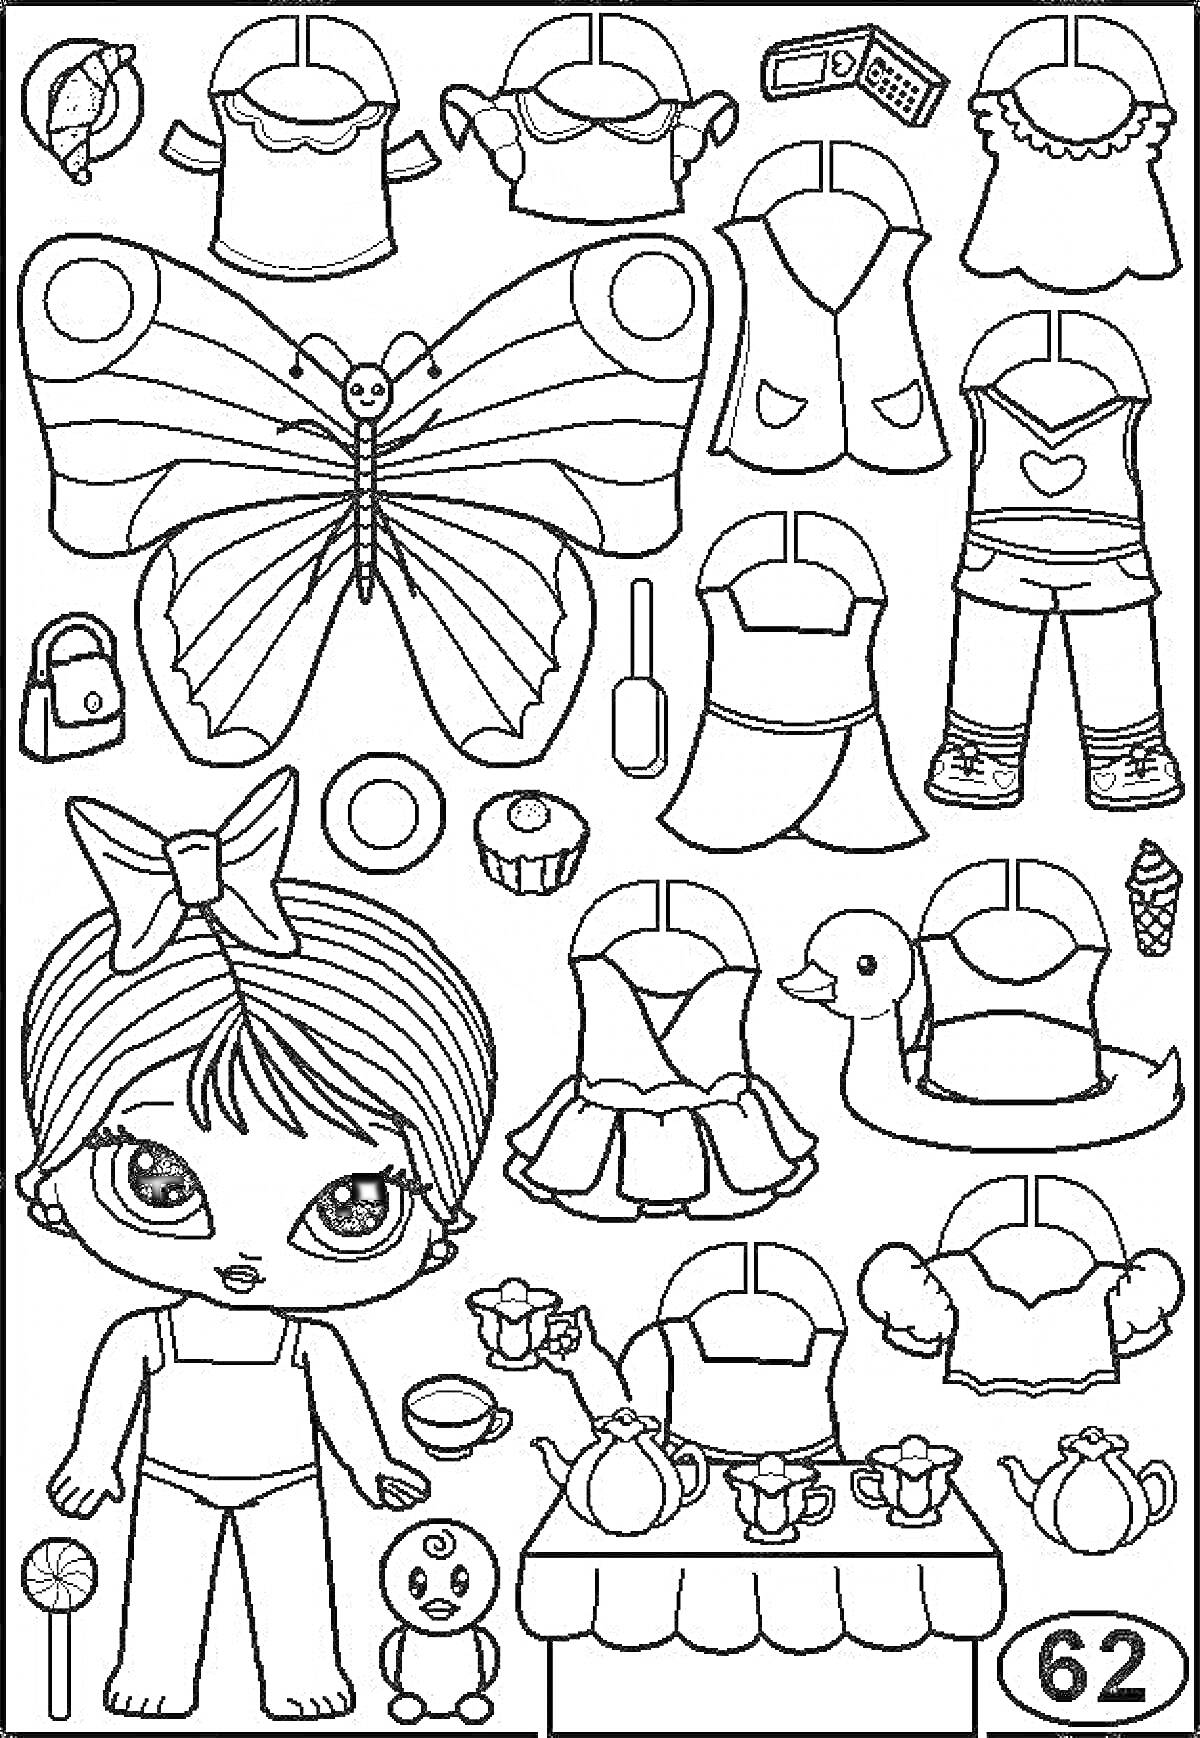 Кукла ЛОЛ с одеждой и аксесуарами для вырезания - платье, топы, жилет, штаны, крылья бабочки, сумка, телефон, лак для ногтей, кекс, напиток, мороженое, зефир, утка, набор чайного сервиза с чайником и чашками, кукла, стол.